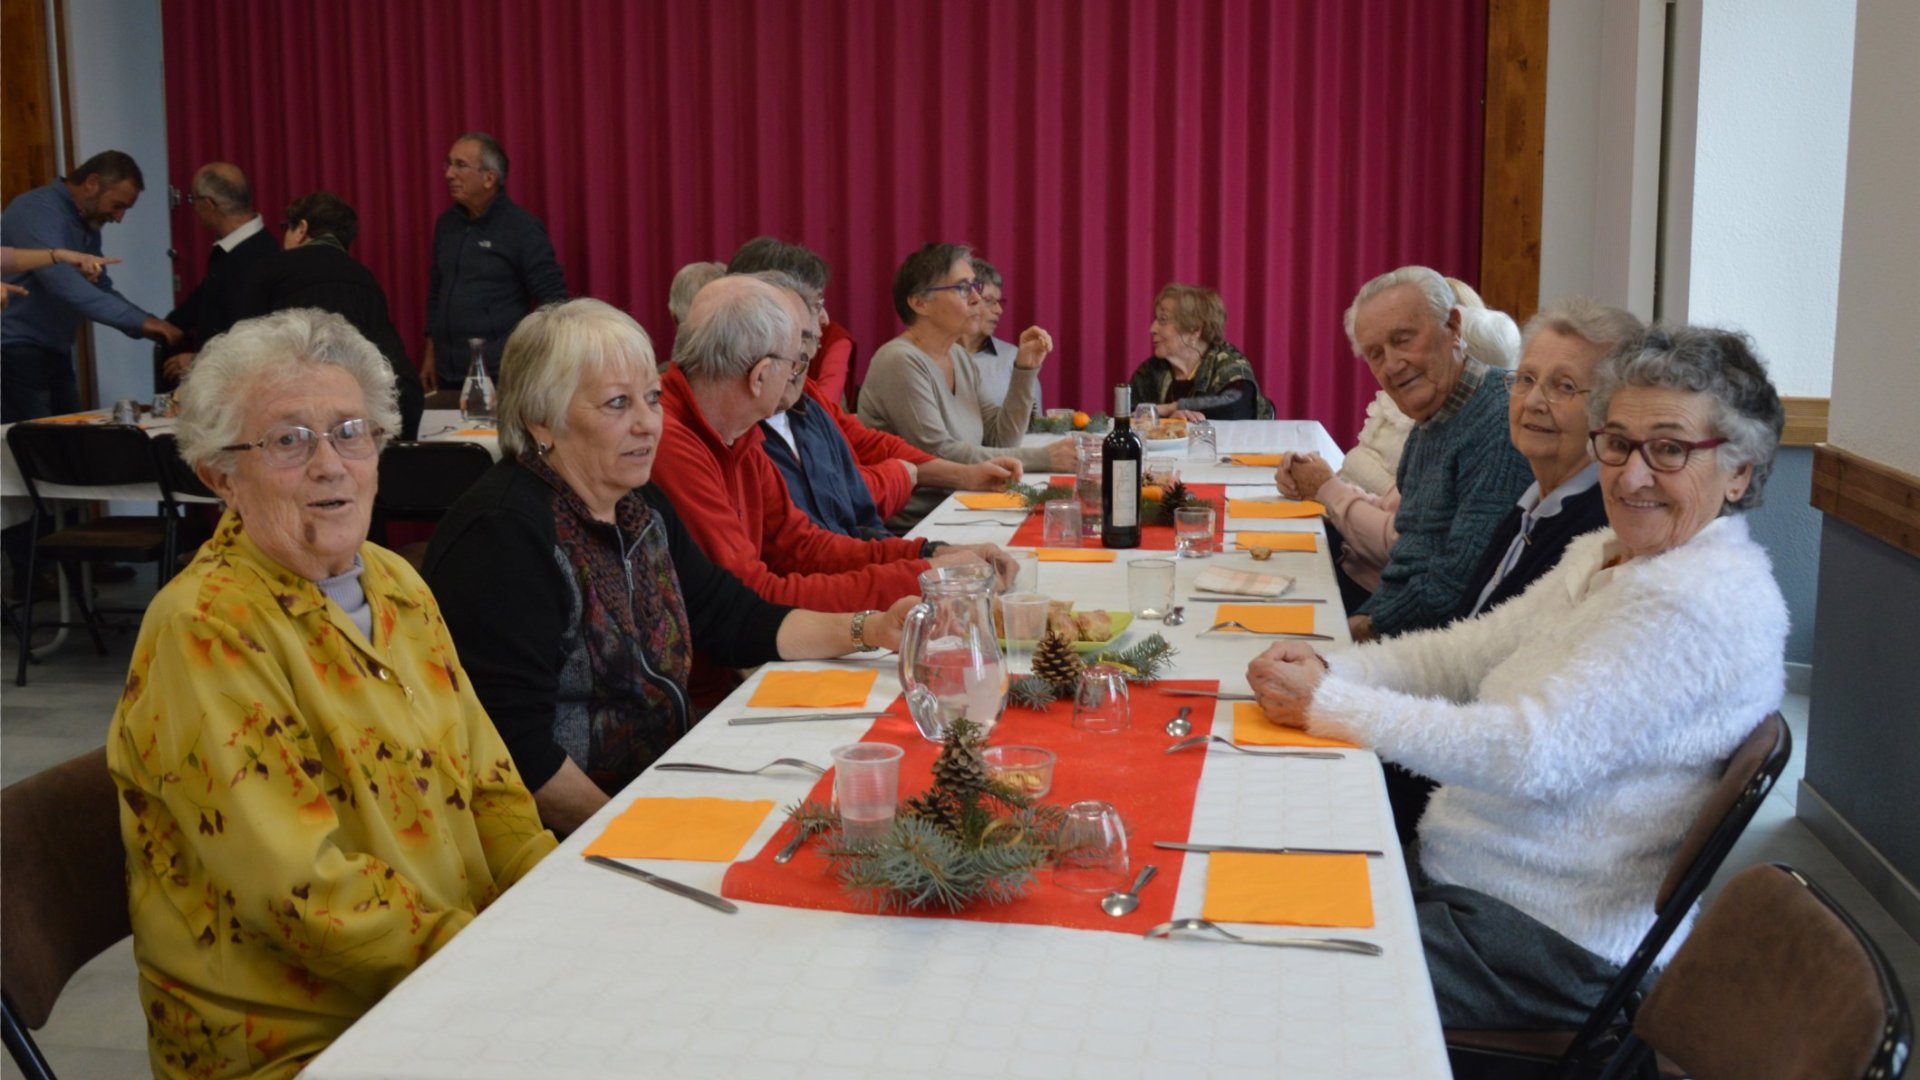 Les membres de l’association des seniors de Réotier étaient heureux de se retrouver autour d’une table.